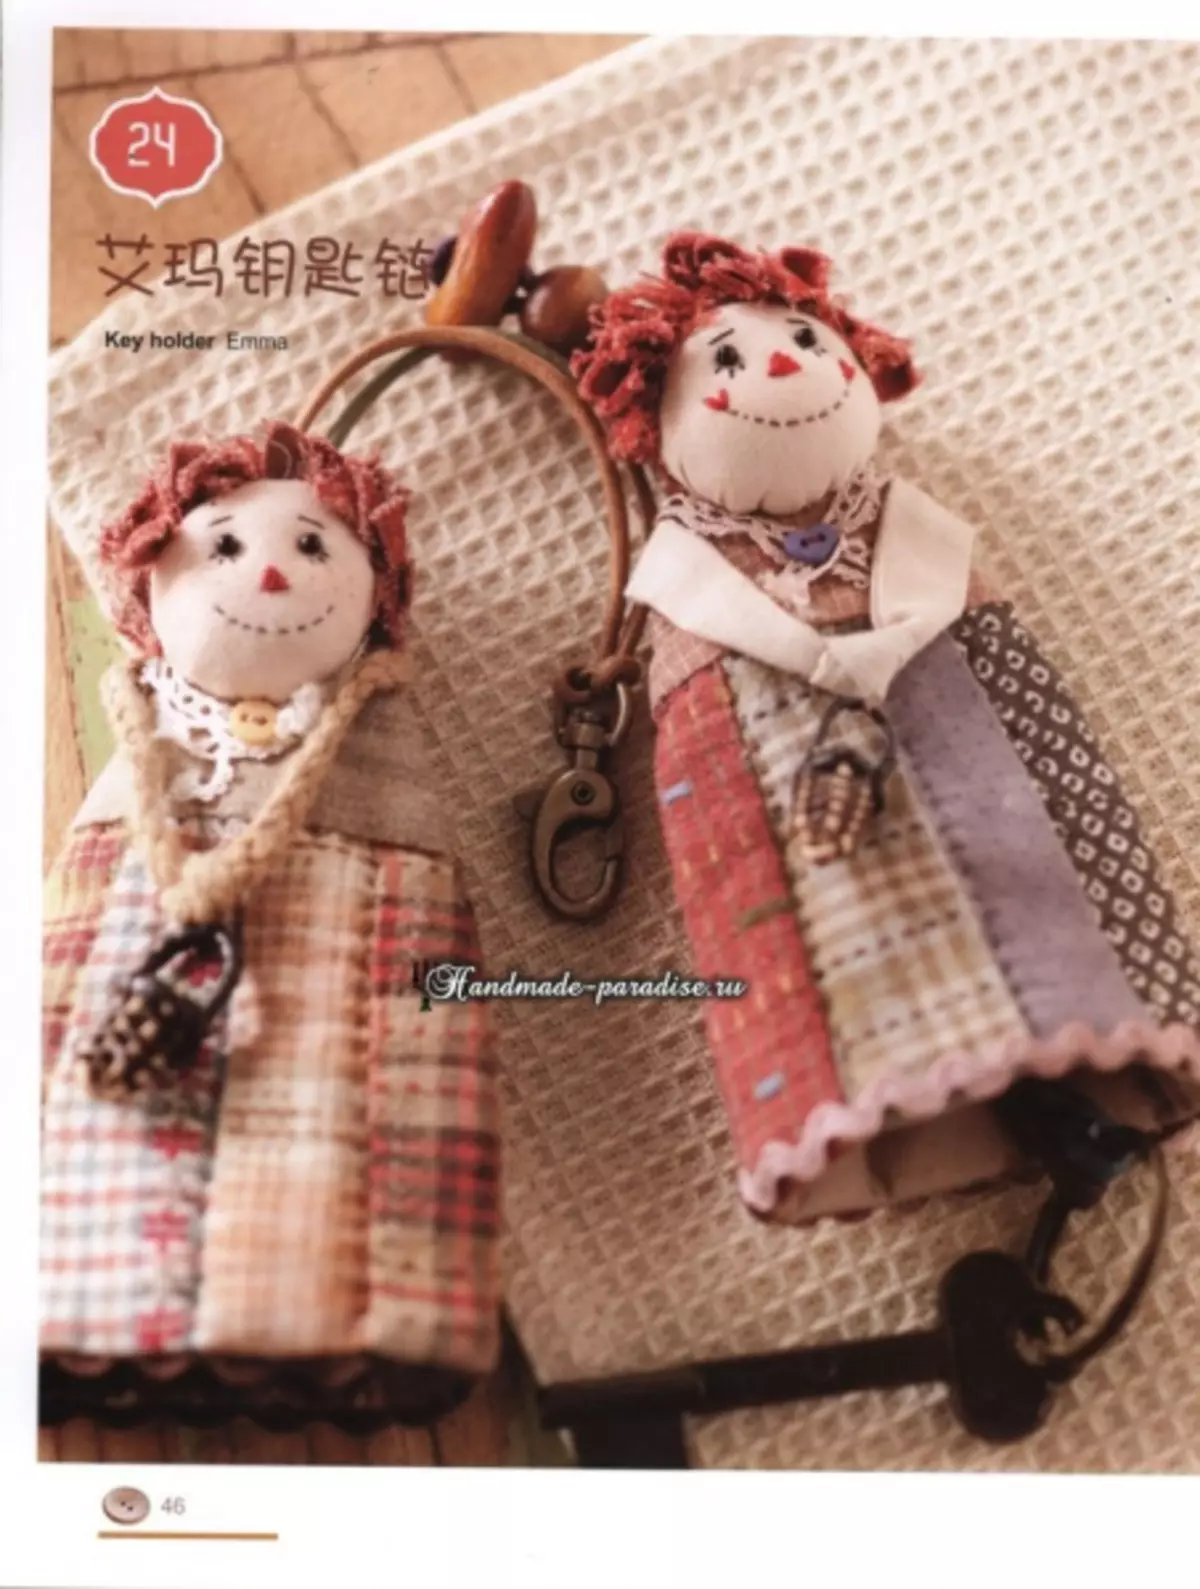 การเย็บปะติดปะต่อกันของญี่ปุ่น ผ้าห่มเป็นนิตยสารรัก